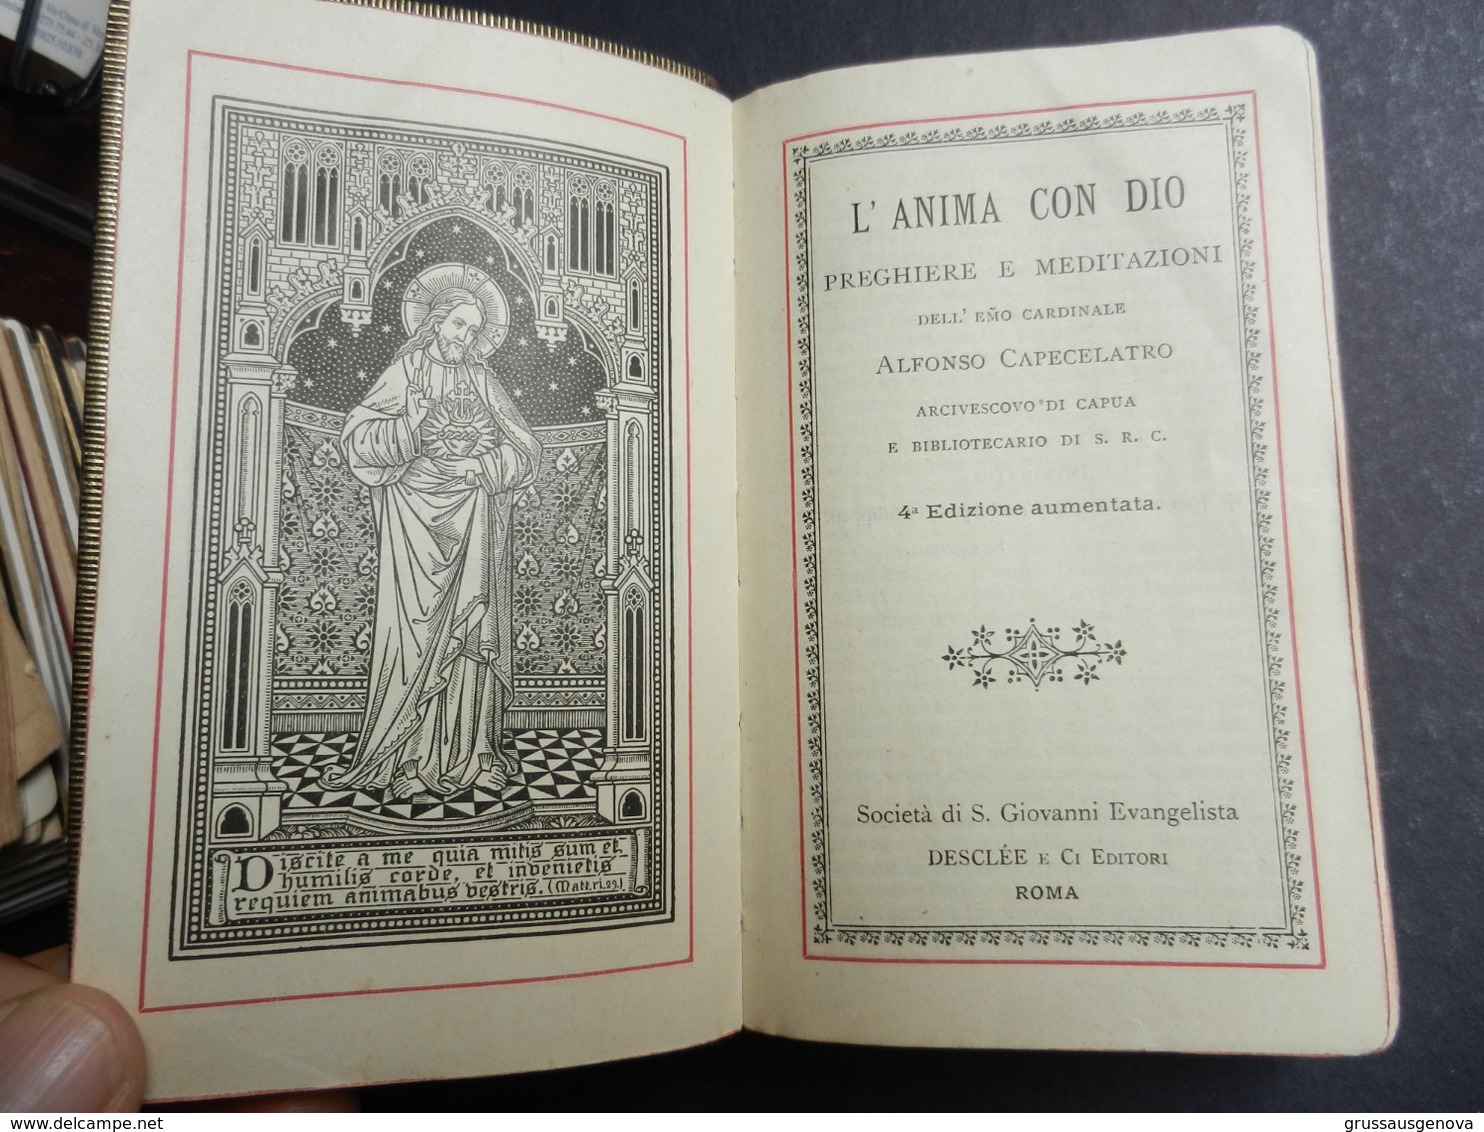 7ogg) L'ANIMA CON DIO PREGHIERE E MEDITAZIONI CARDINALE CAPECELATRO SENZA DATA MA CREDO FINE 1800 - Libri Antichi